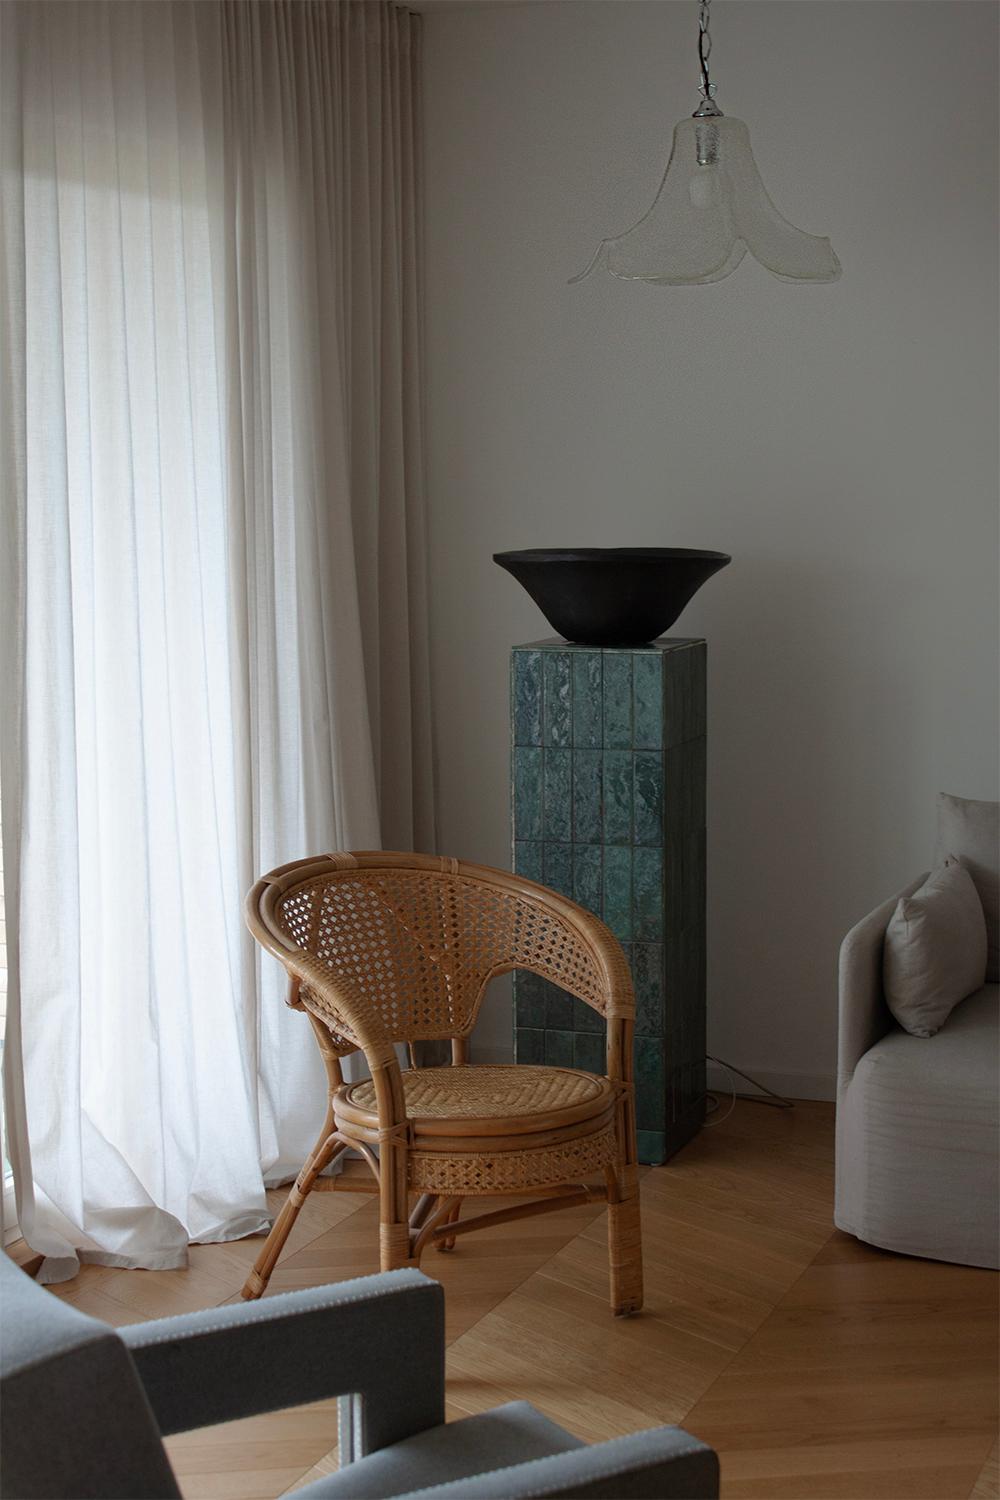 Magnifique et délicate chaise en bambou, osier et rotin datant d'environ 1970. Ce meuble unique a été fabriqué à la main et est composé de bambou et de rotin naturels. Ce fauteuil est une pièce vraiment spéciale. Construite sans vis ni clous, la